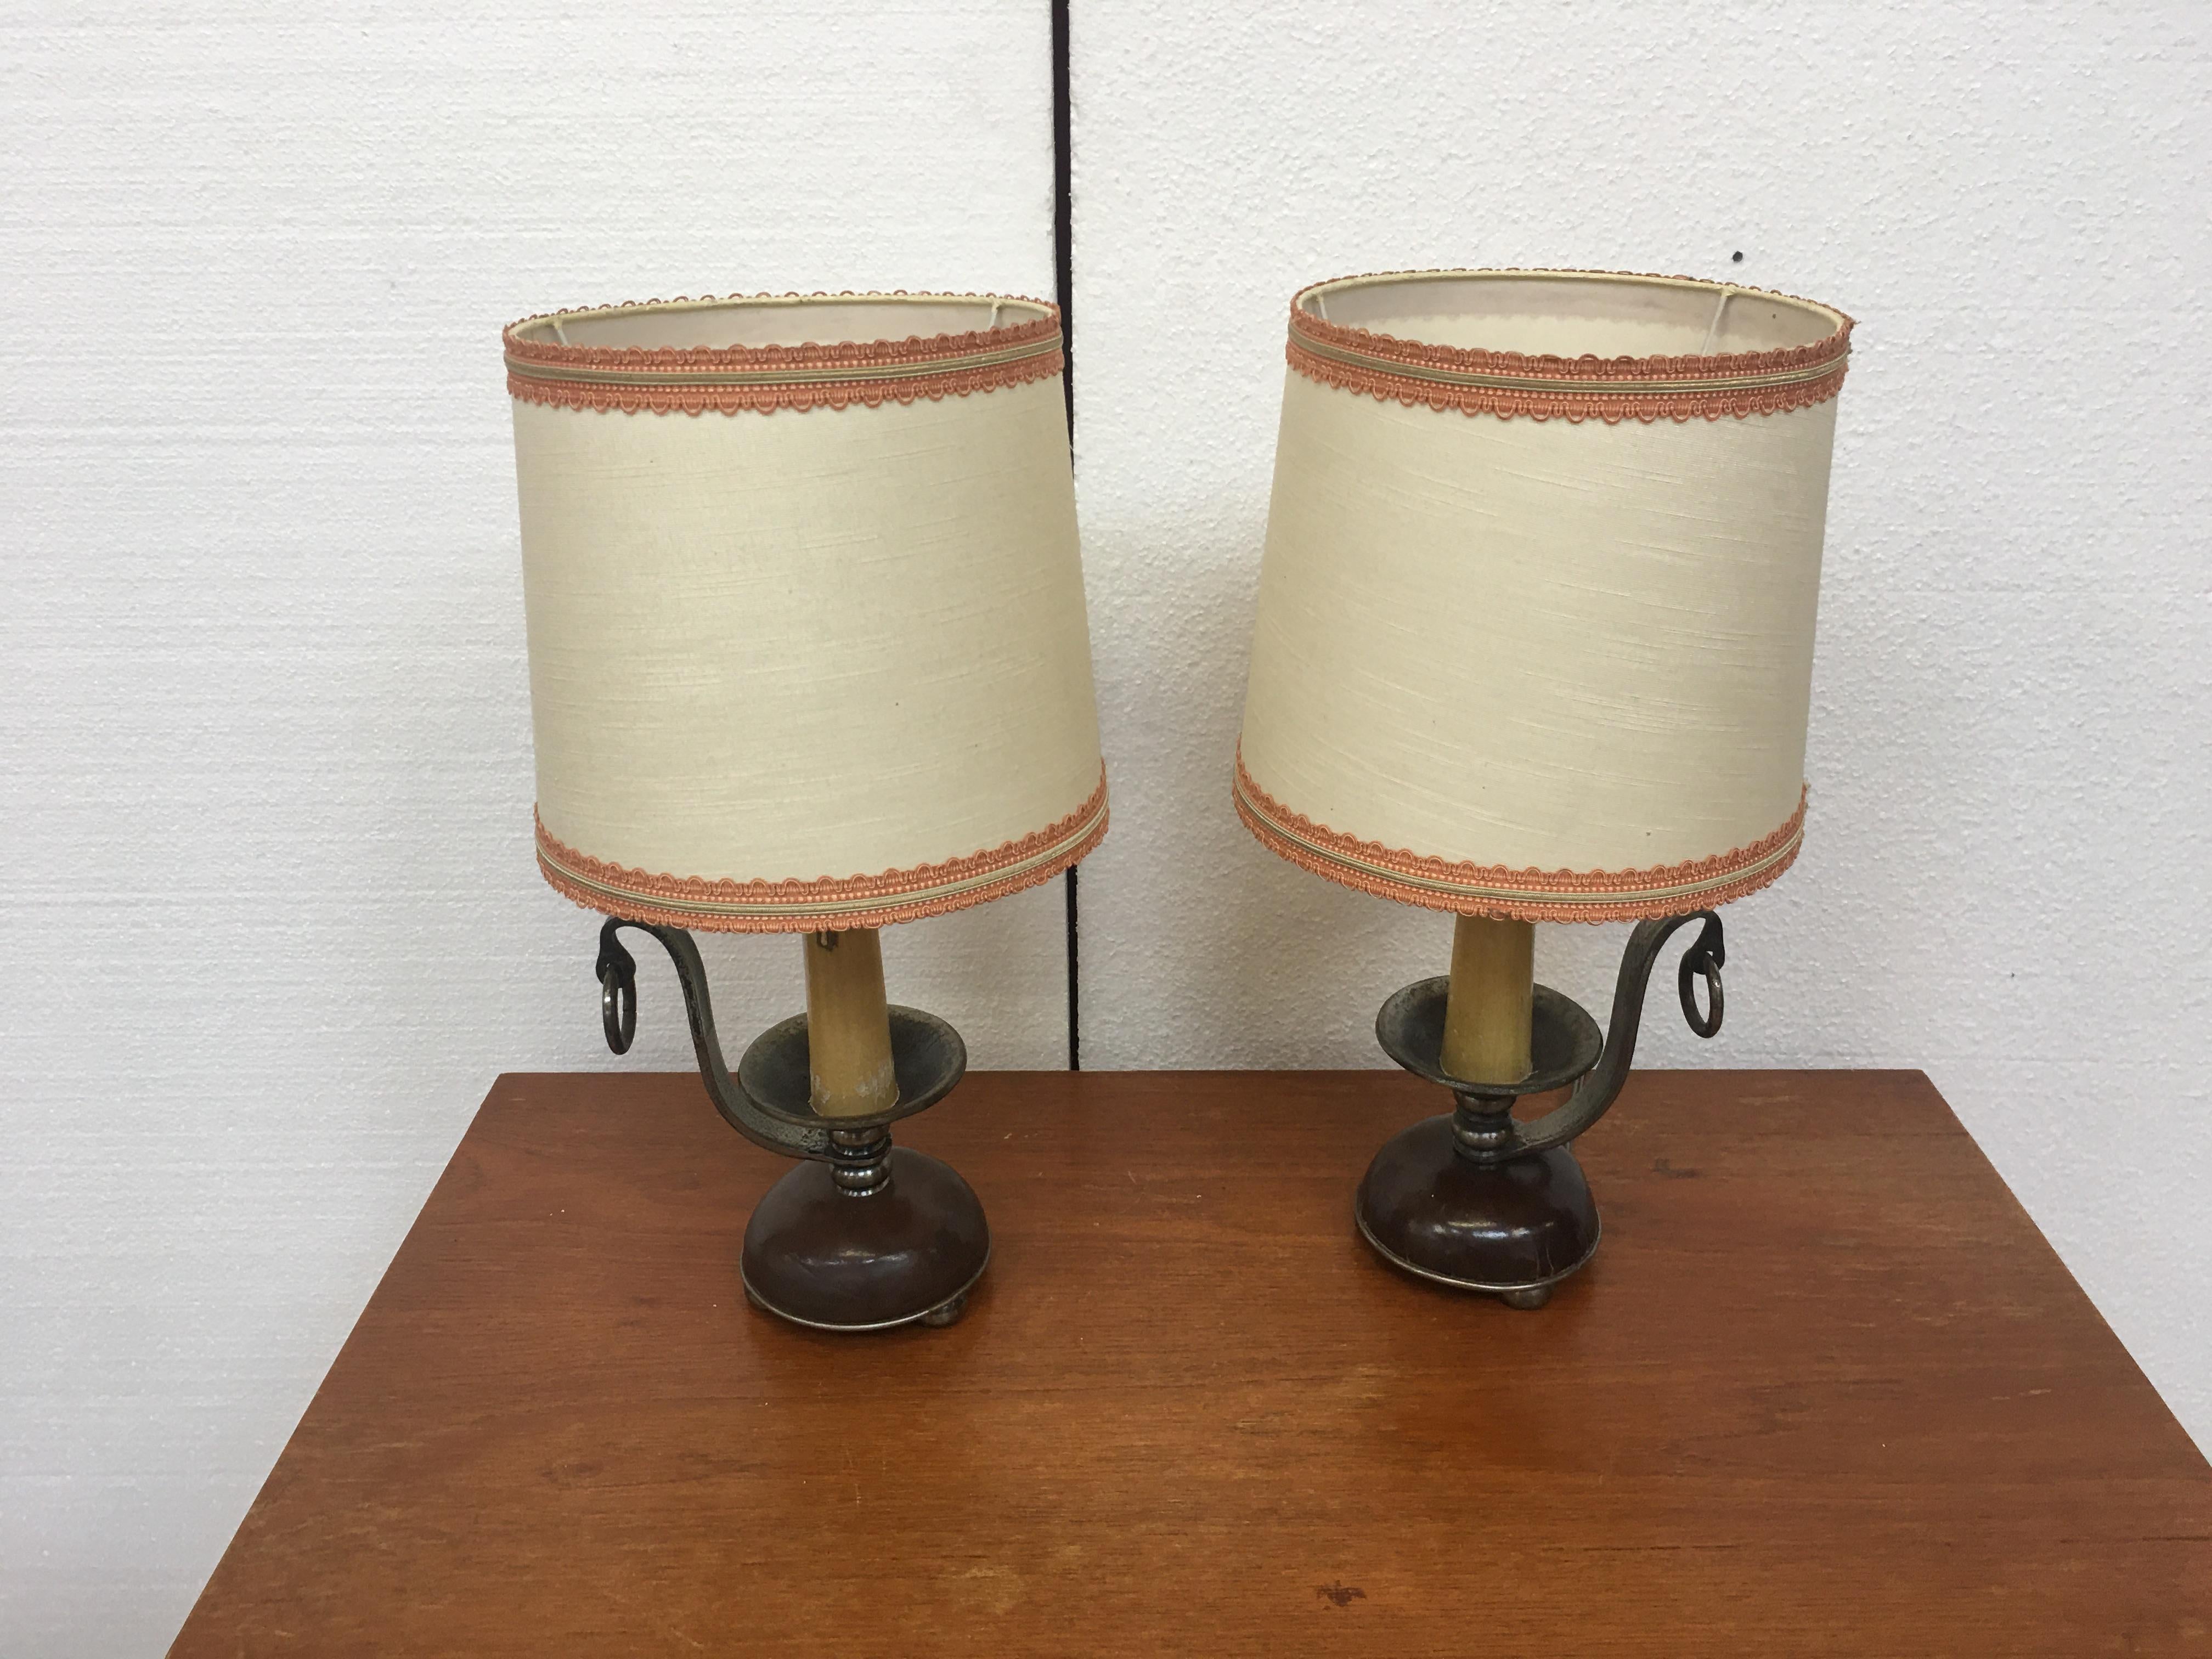 2 lampes originales en fer forgé vers 1950/1960
abat-jour en bon état.